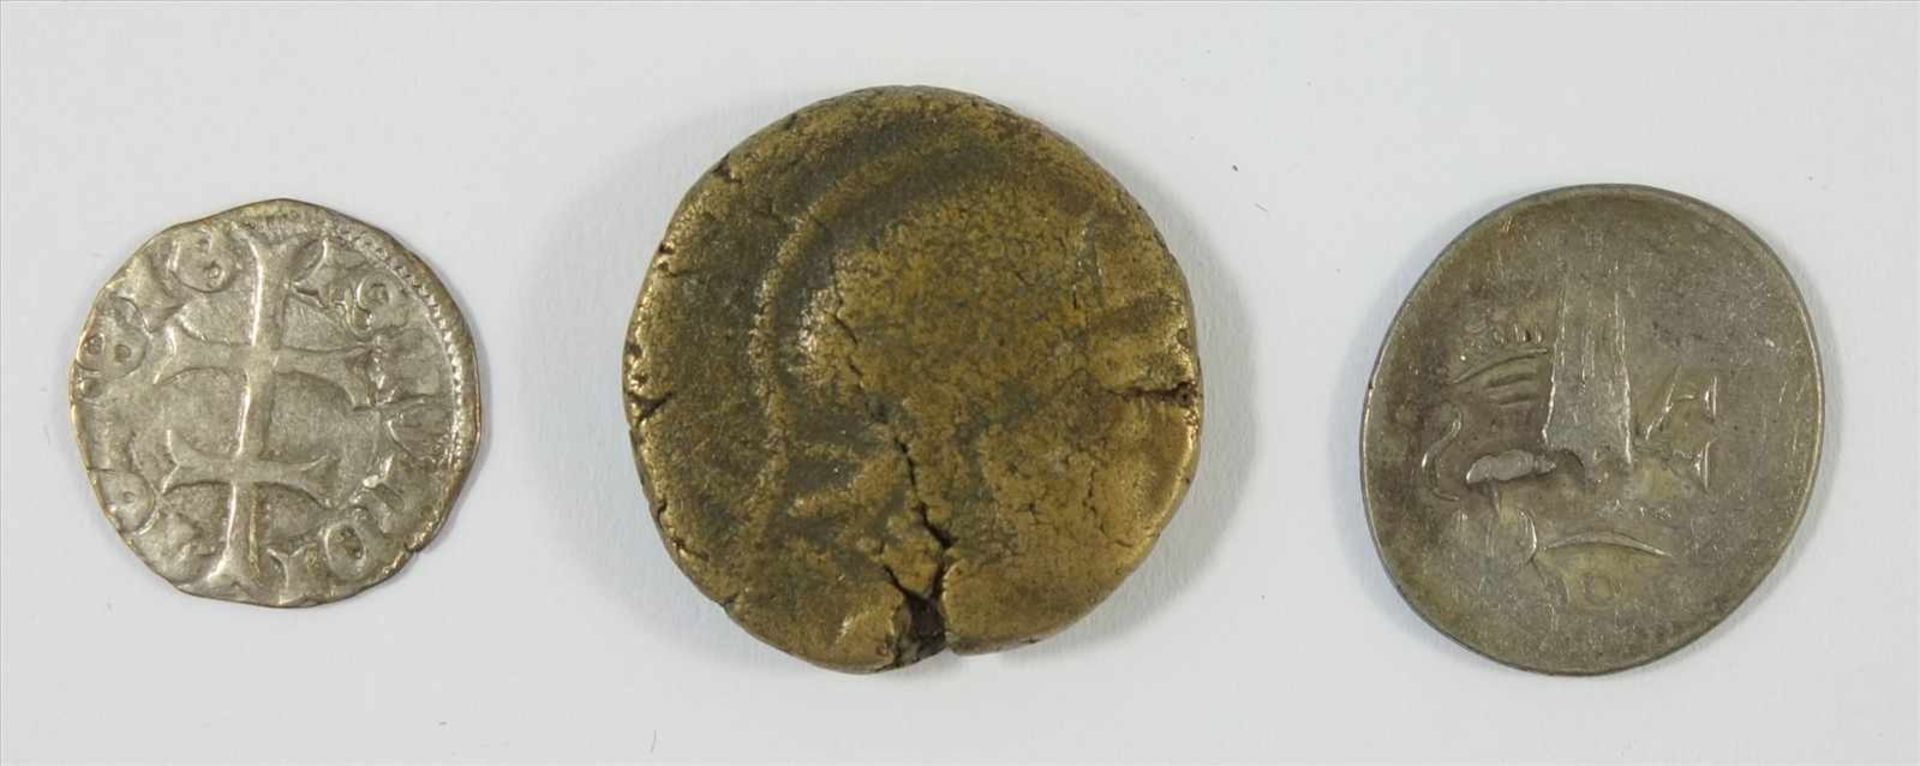 3 Kleinmünzen: Denar 1386 - 1437, 1/8 Tical, Kambotscha,1643-1845, eine Münze unidentifiziert